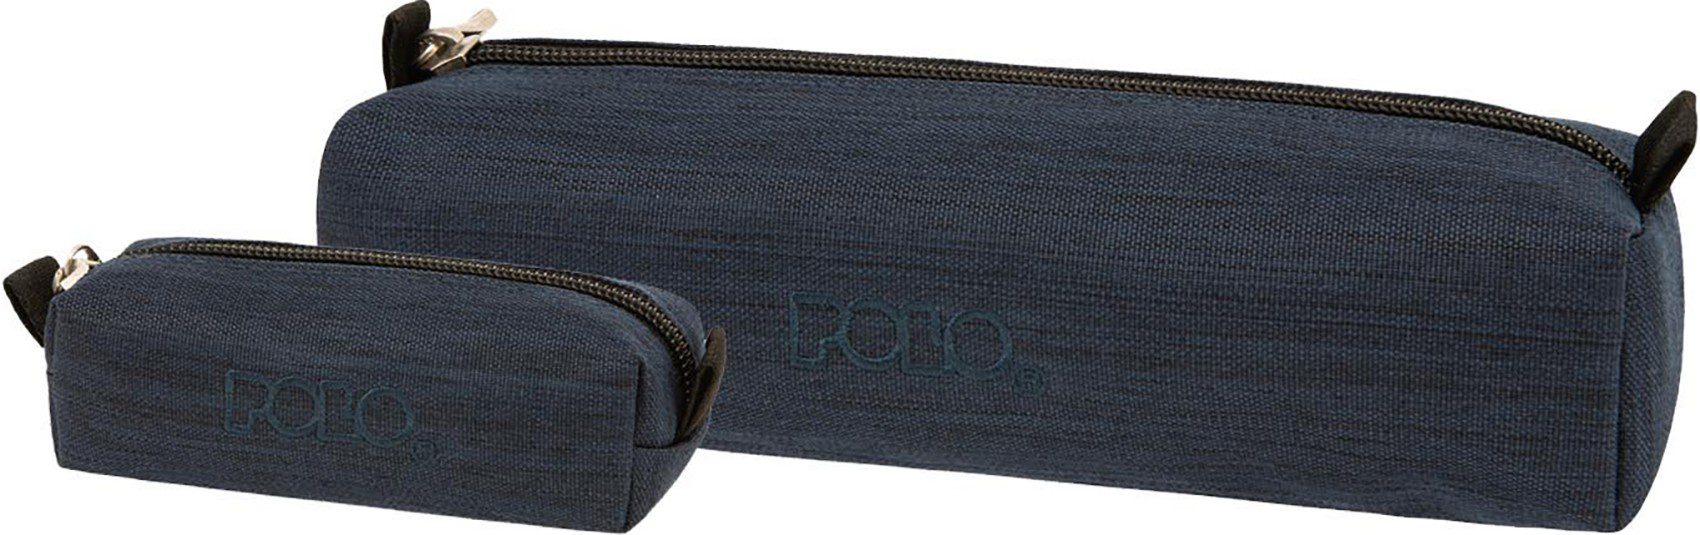 Polo Κασετινα Wallet Jean Μπλε Σκουρο 2023